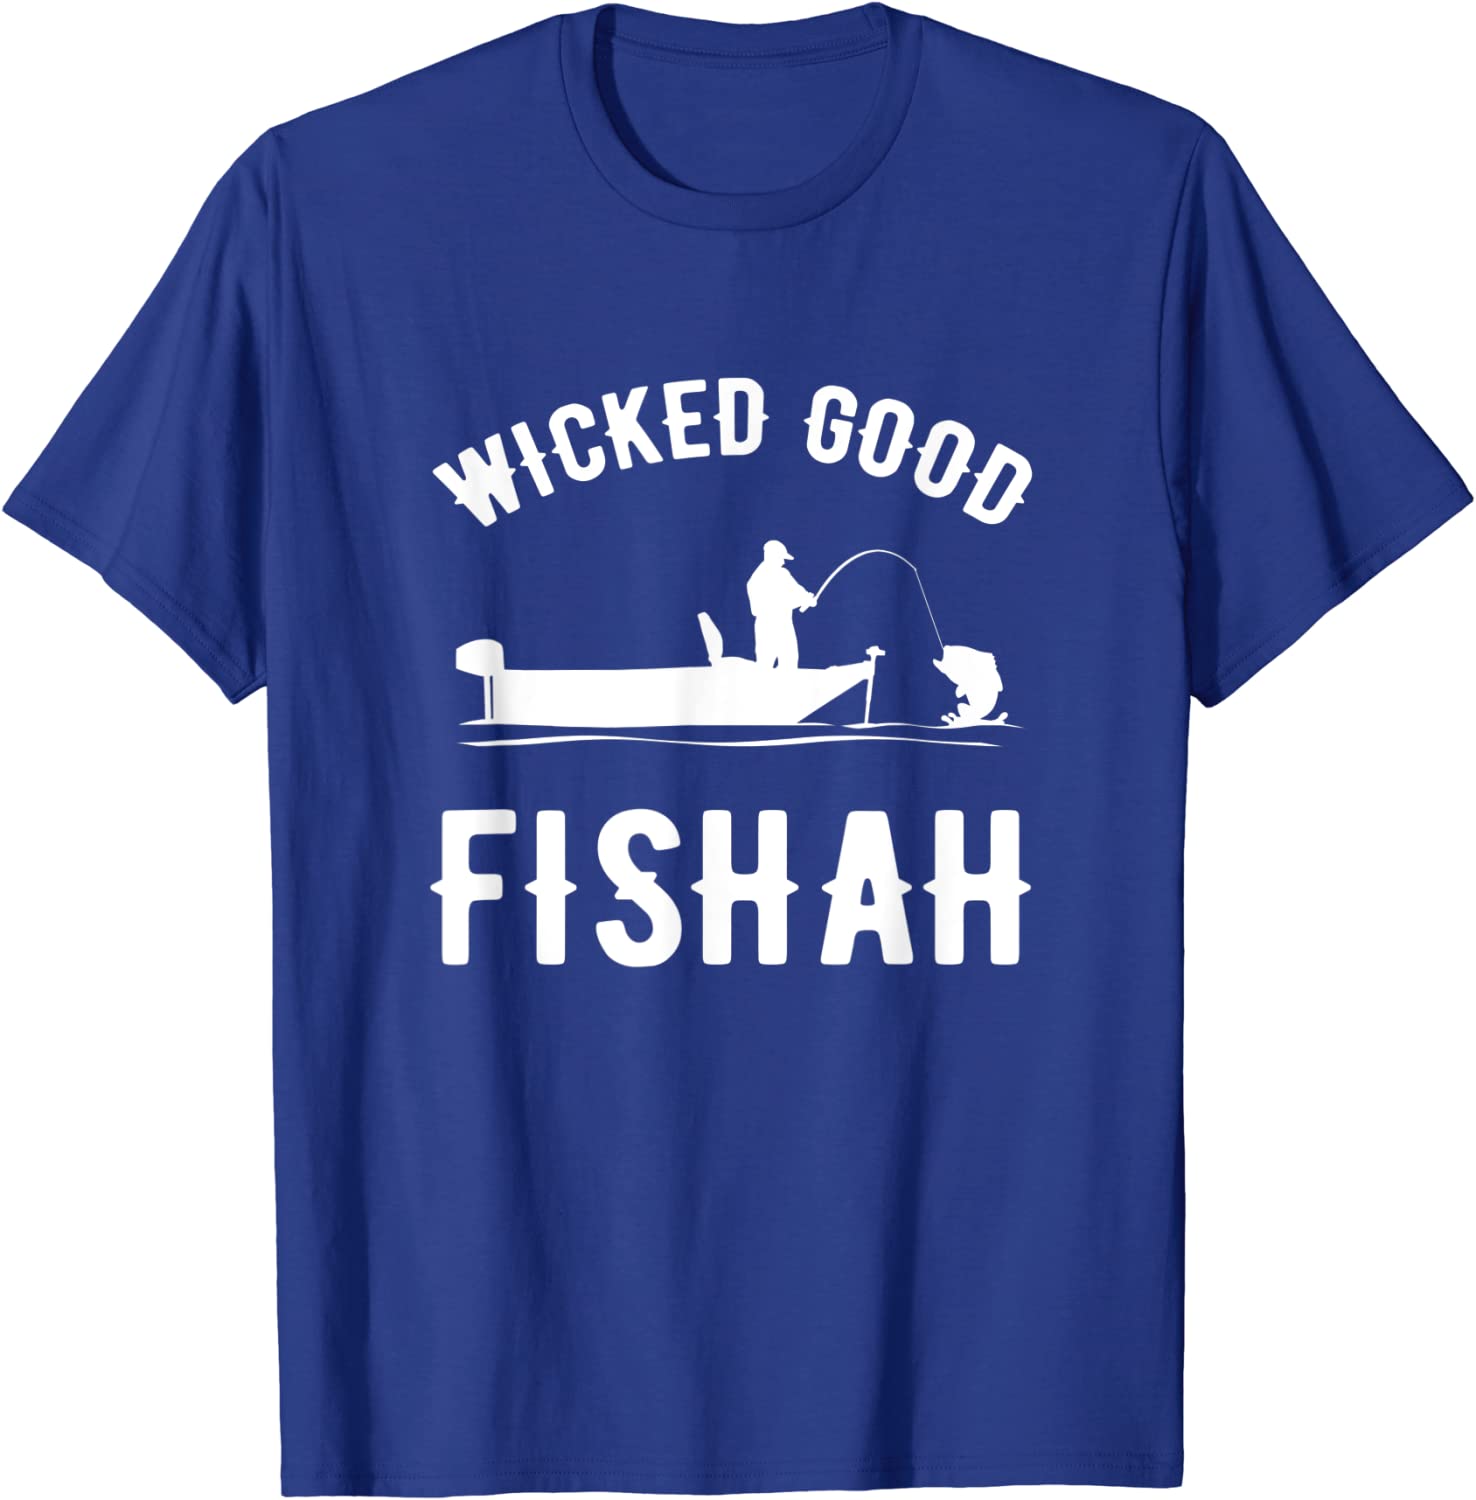 wicked good fishah t-shirt